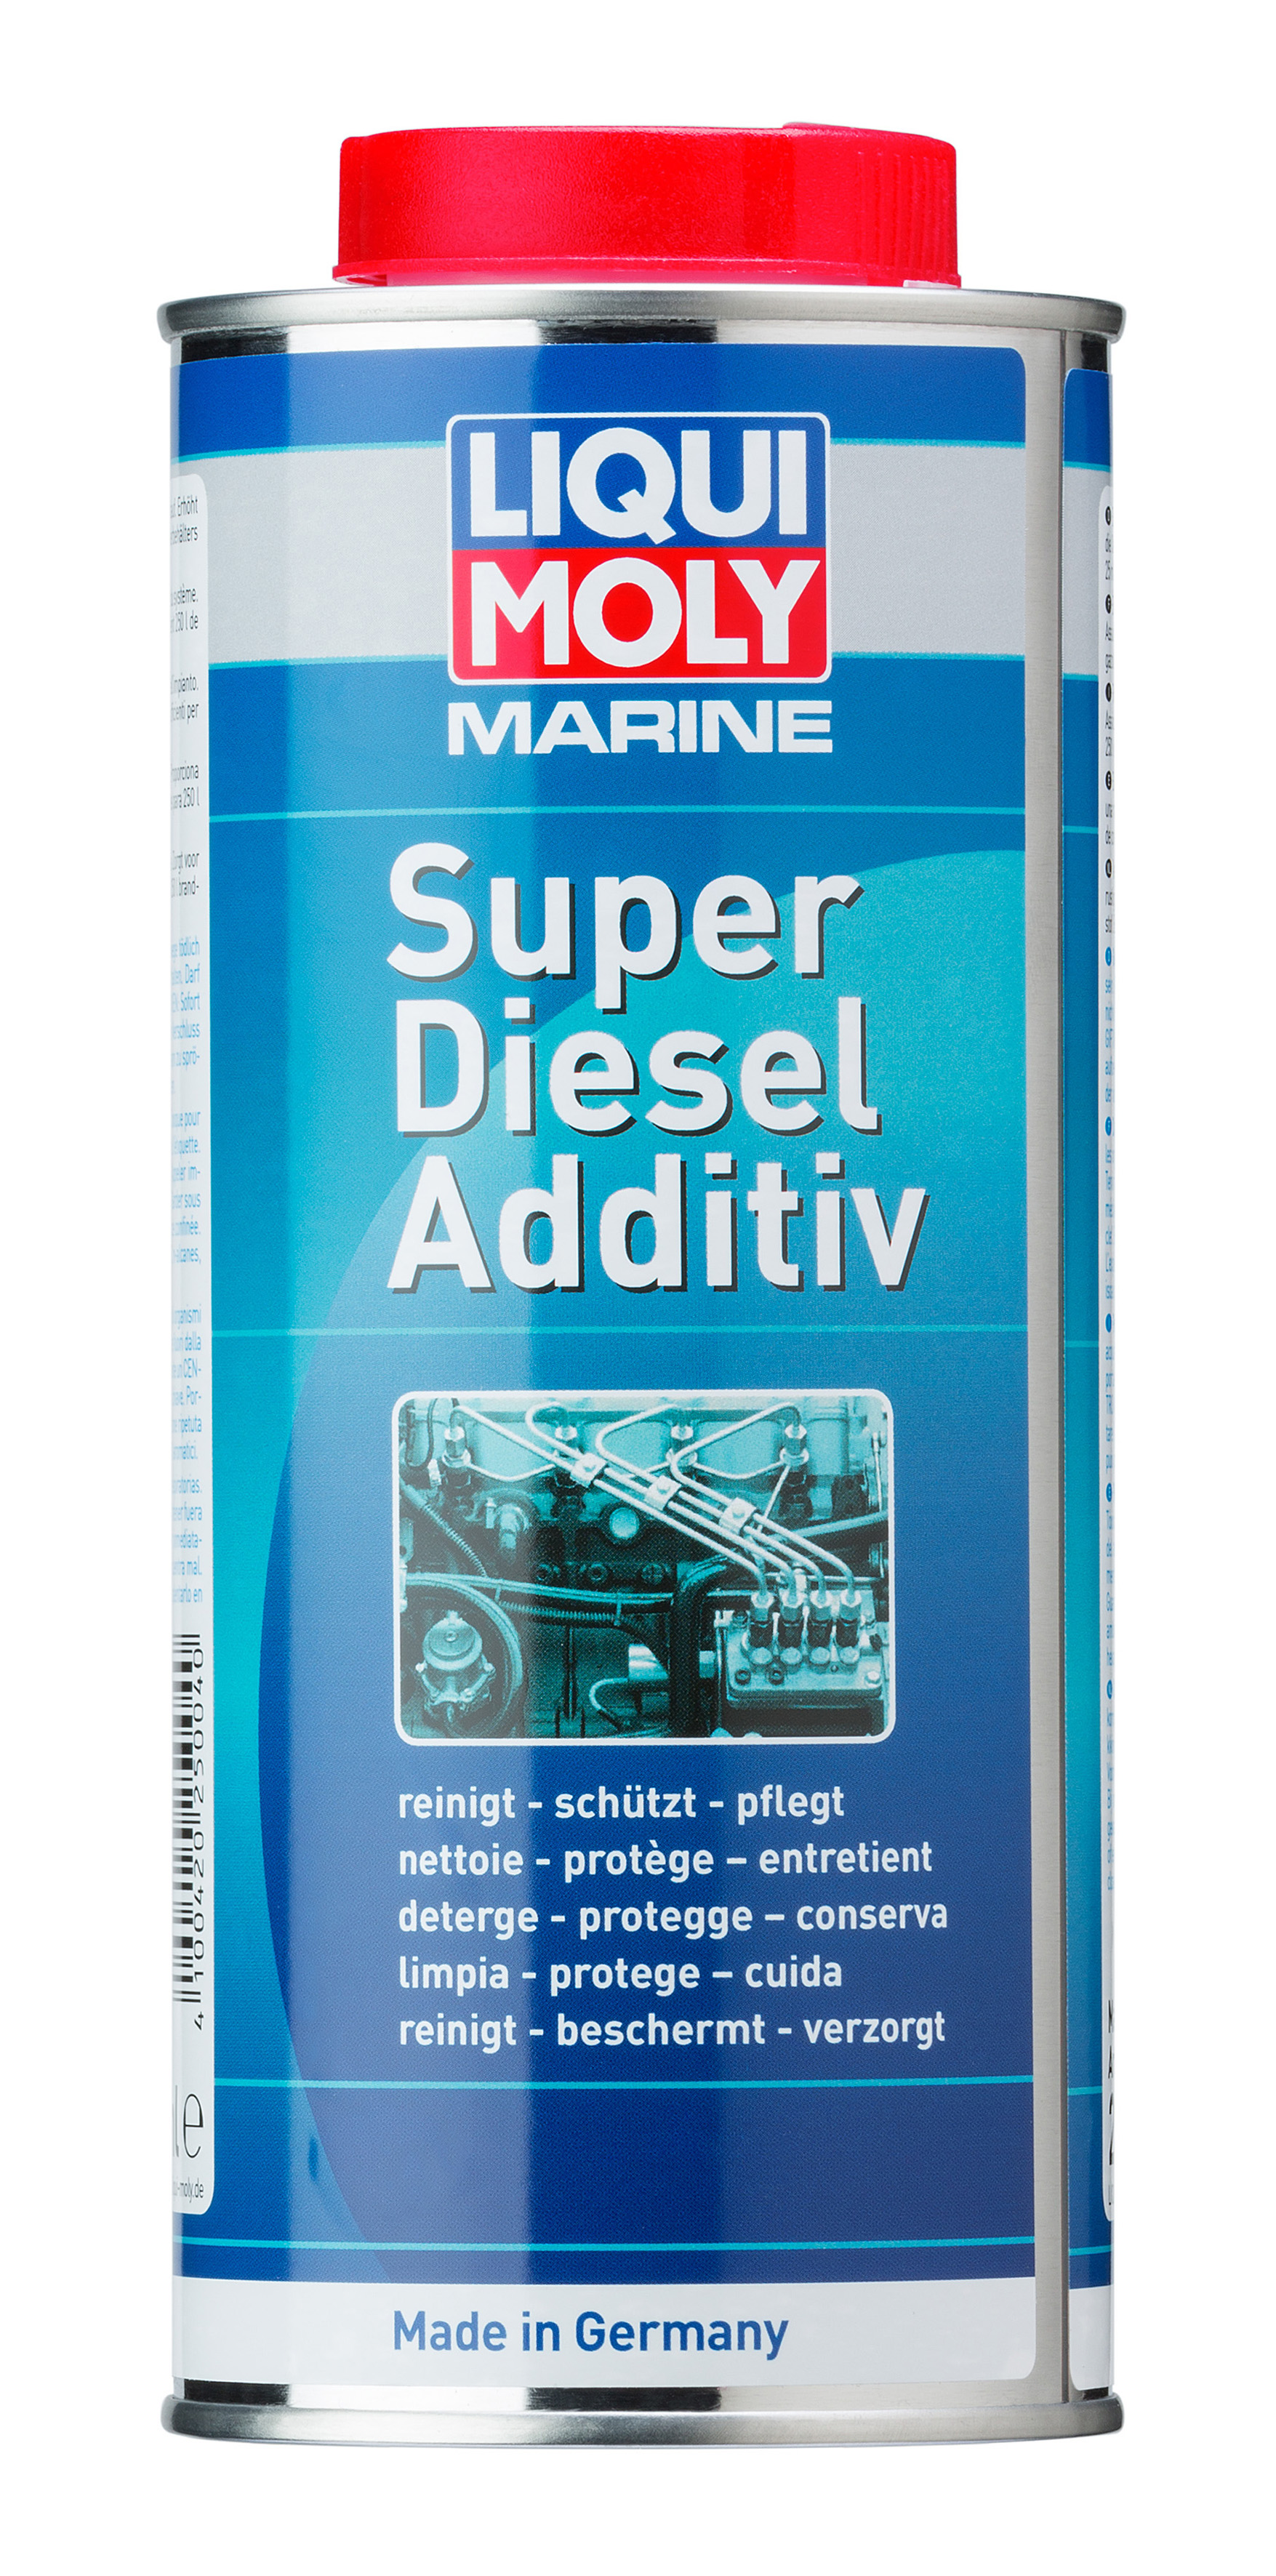 Marine Super Diesel Additiv